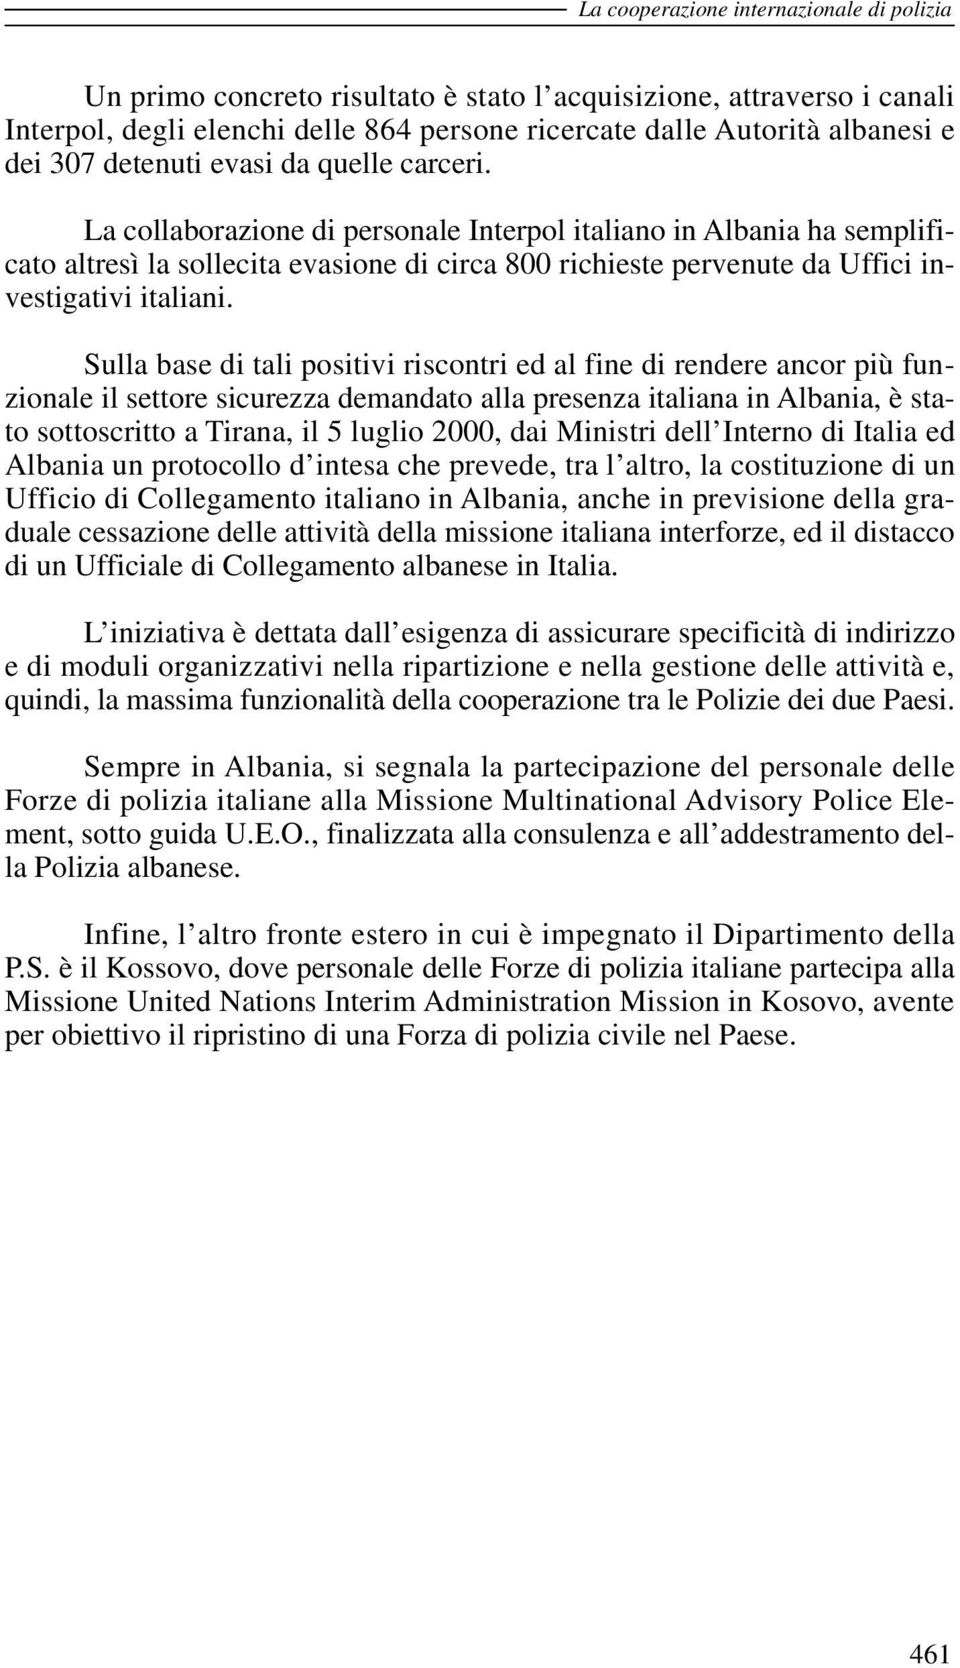 La collaborazione di personale Interpol italiano in Albania ha semplificato altresì la sollecita evasione di circa 800 richieste pervenute da Uffici investigativi italiani.